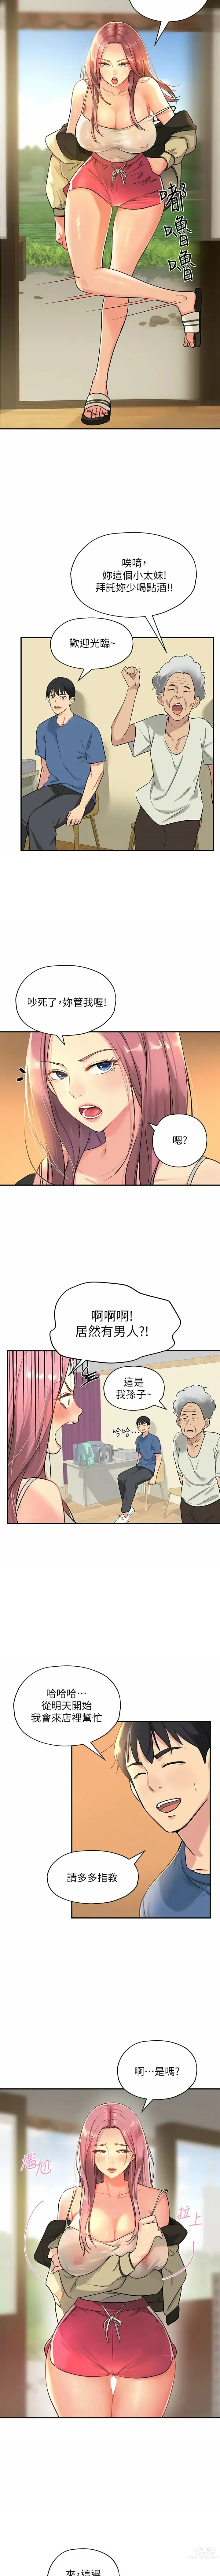 Page 11 of manga 洞洞杂货铺/Glory Hole Shop 1-71